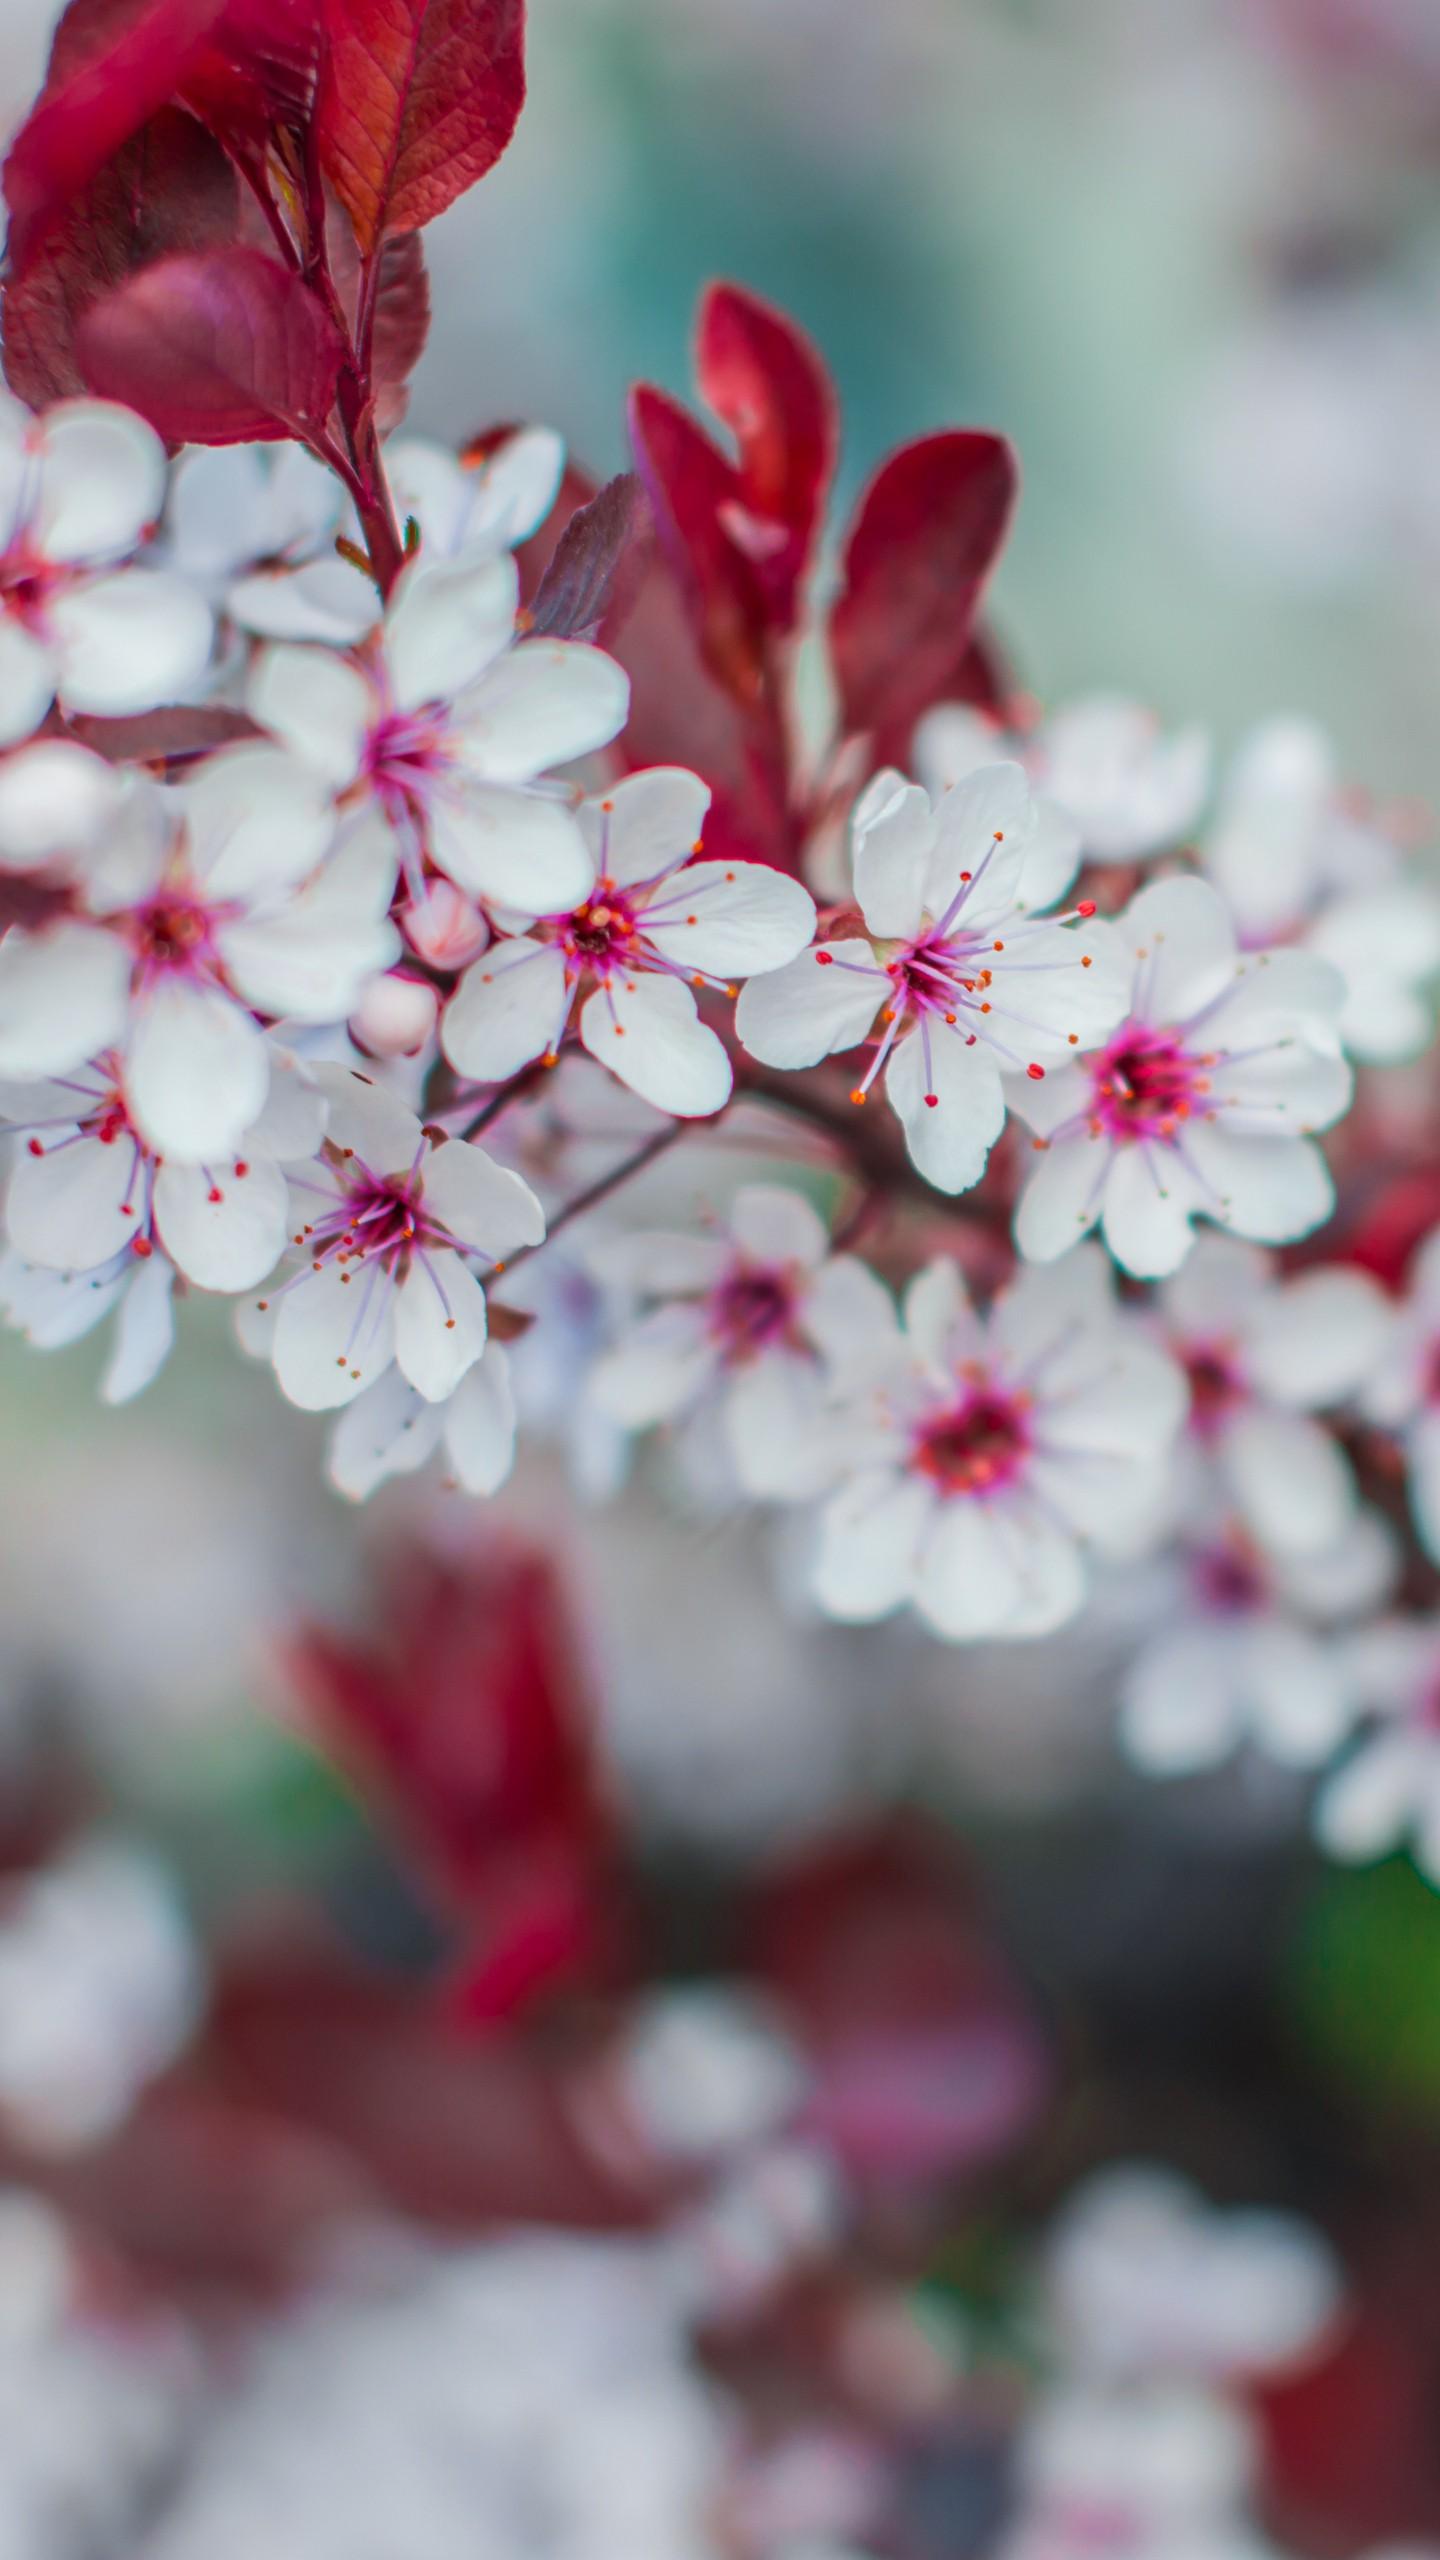 вертикальная версия розовой фотографии картинка весна цветущая вишня телефон  обои Фон И картинка для бесплатной загрузки - Pngtree